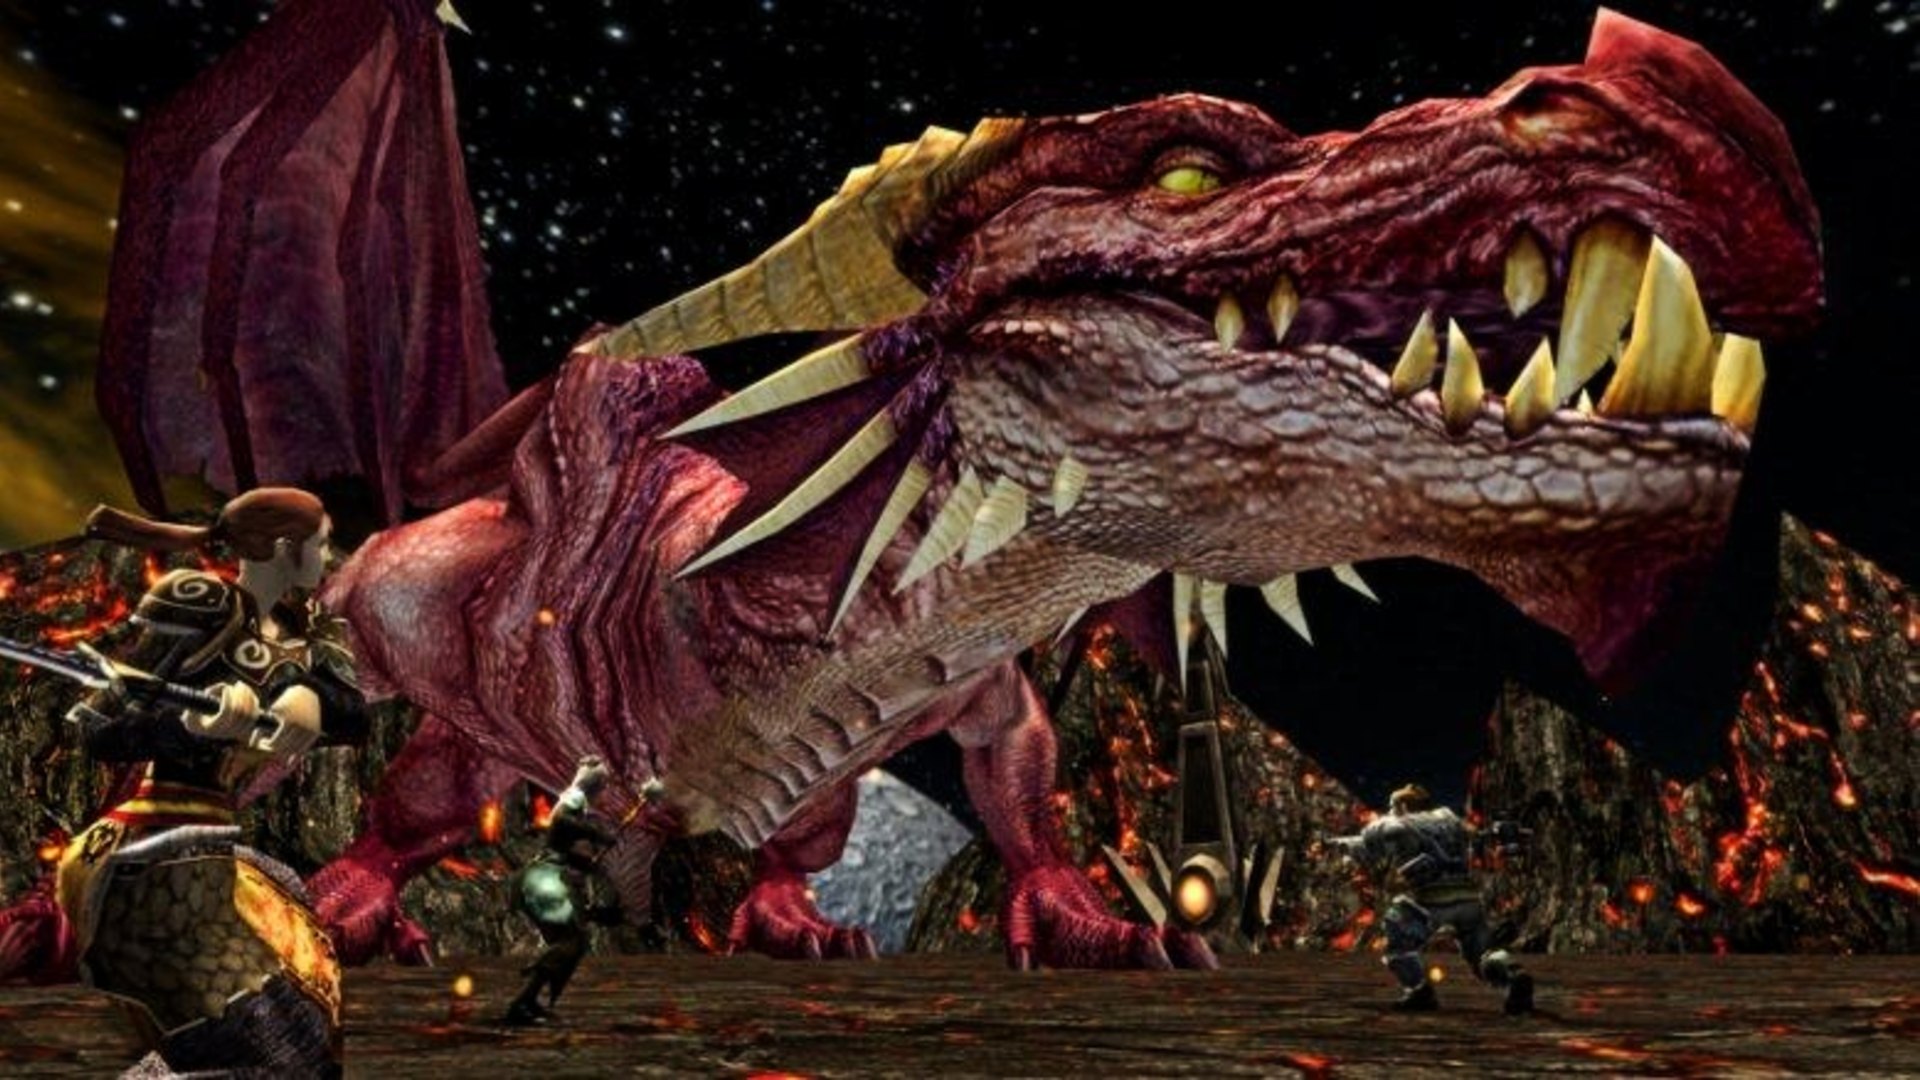 Game PC gratis terbaik: D&D online. Gambar menunjukkan naga besar yang diperjuangkan oleh sekelompok prajurit